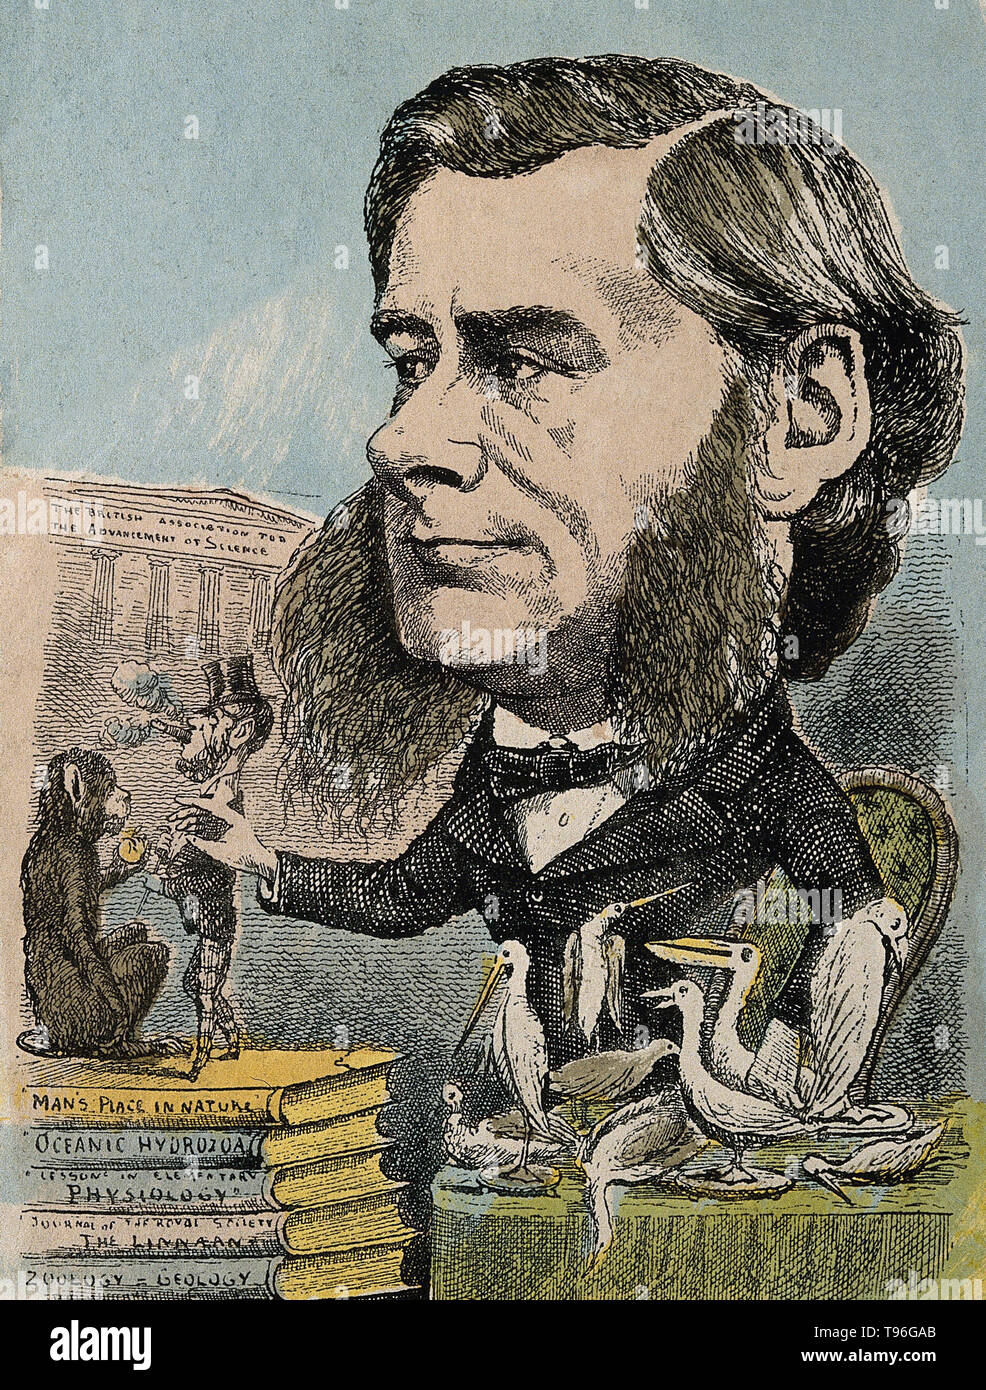 Thomas Henry Huxley (4. Mai 1825 - 29. Juni 1895) war ein englischer Biologe, als "'Darwin Bulldogge'' für seine Befürwortung von Charles Darwins Theorie der Evolution bekannt. Huxleys berühmte 1860 Aussprache mit Samuel Wilberforce war ein wichtiger Moment in der breitere Akzeptanz der Evolution, und in seiner eigenen Karriere. Huxley war langsam zu einigen von Darwins Ideen, wie Gradualismus akzeptieren, und war unbestimmt über die natürliche Selektion, aber trotz dieser war er in seinen öffentlichen Unterstützung von Darwin von ganzem Herzen. Stockfoto